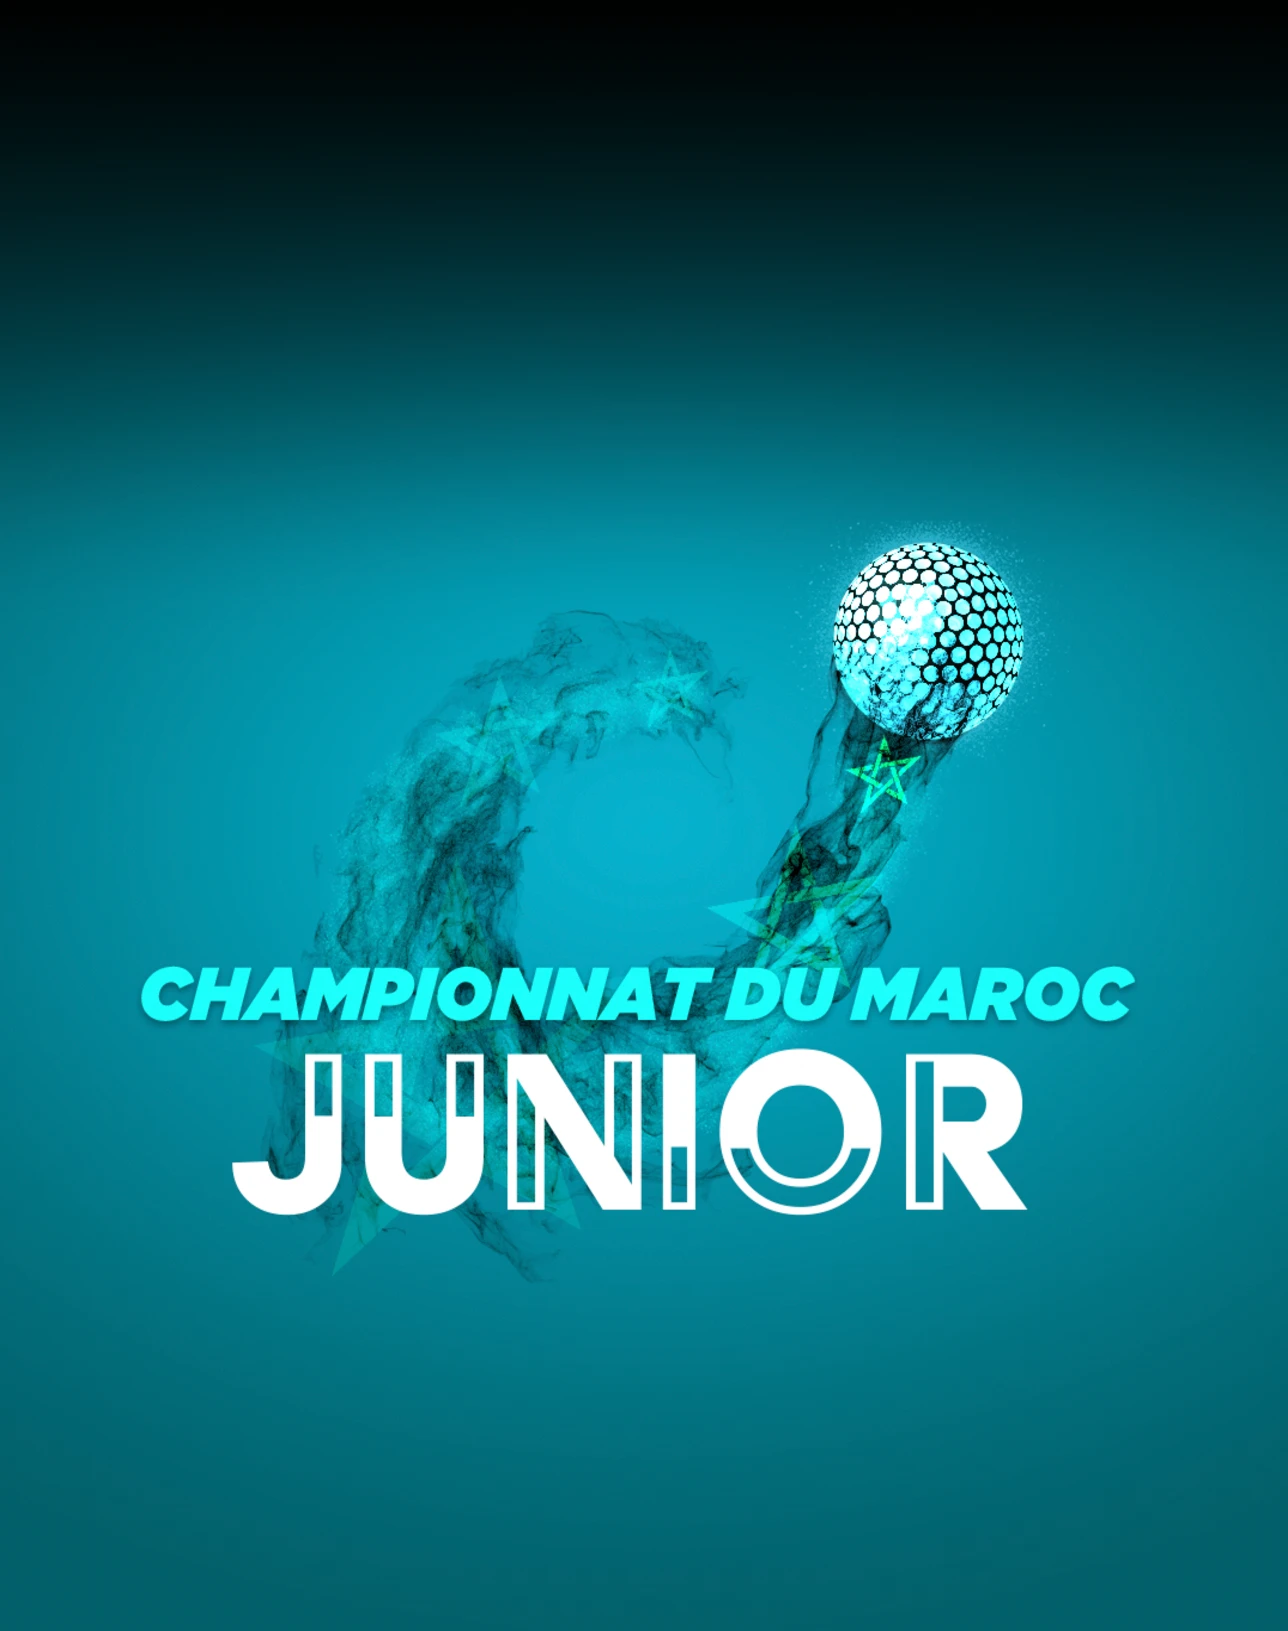 Championnat-de-maroc-junior-1